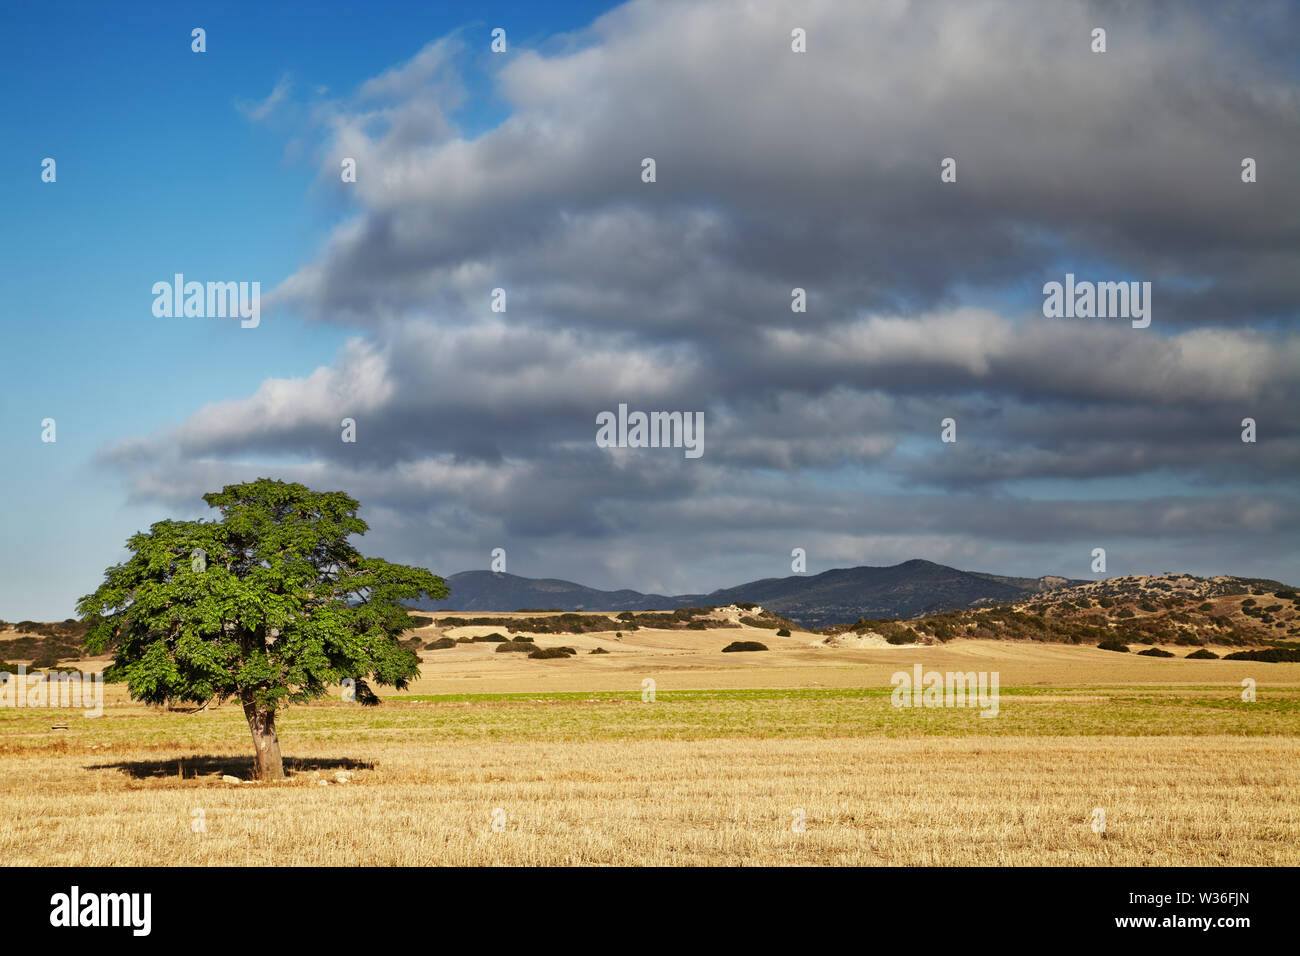 Landschaft mit einem einsamen Baum in einem Feld gemäht, Nördlich Zypern Stockfoto